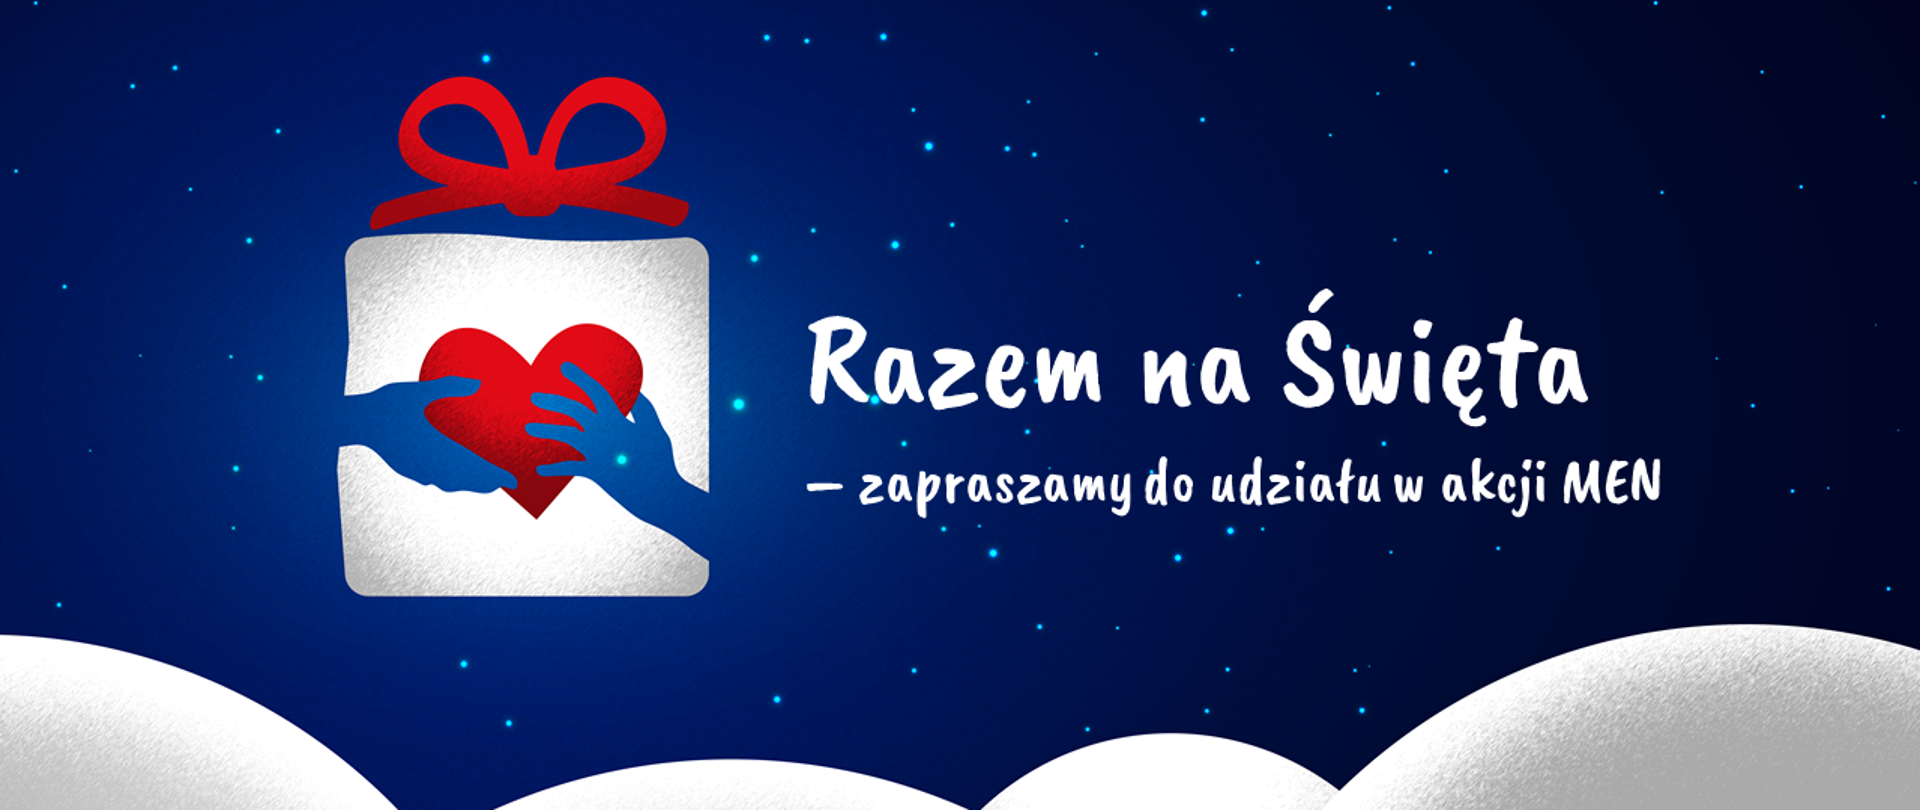 Grafika z gwieździstym niebem i śniegiem. Na środku logo akcji "Razem na Święta" oraz tekst "Razem na Święta – zapraszamy do udziału w akcji MEN"